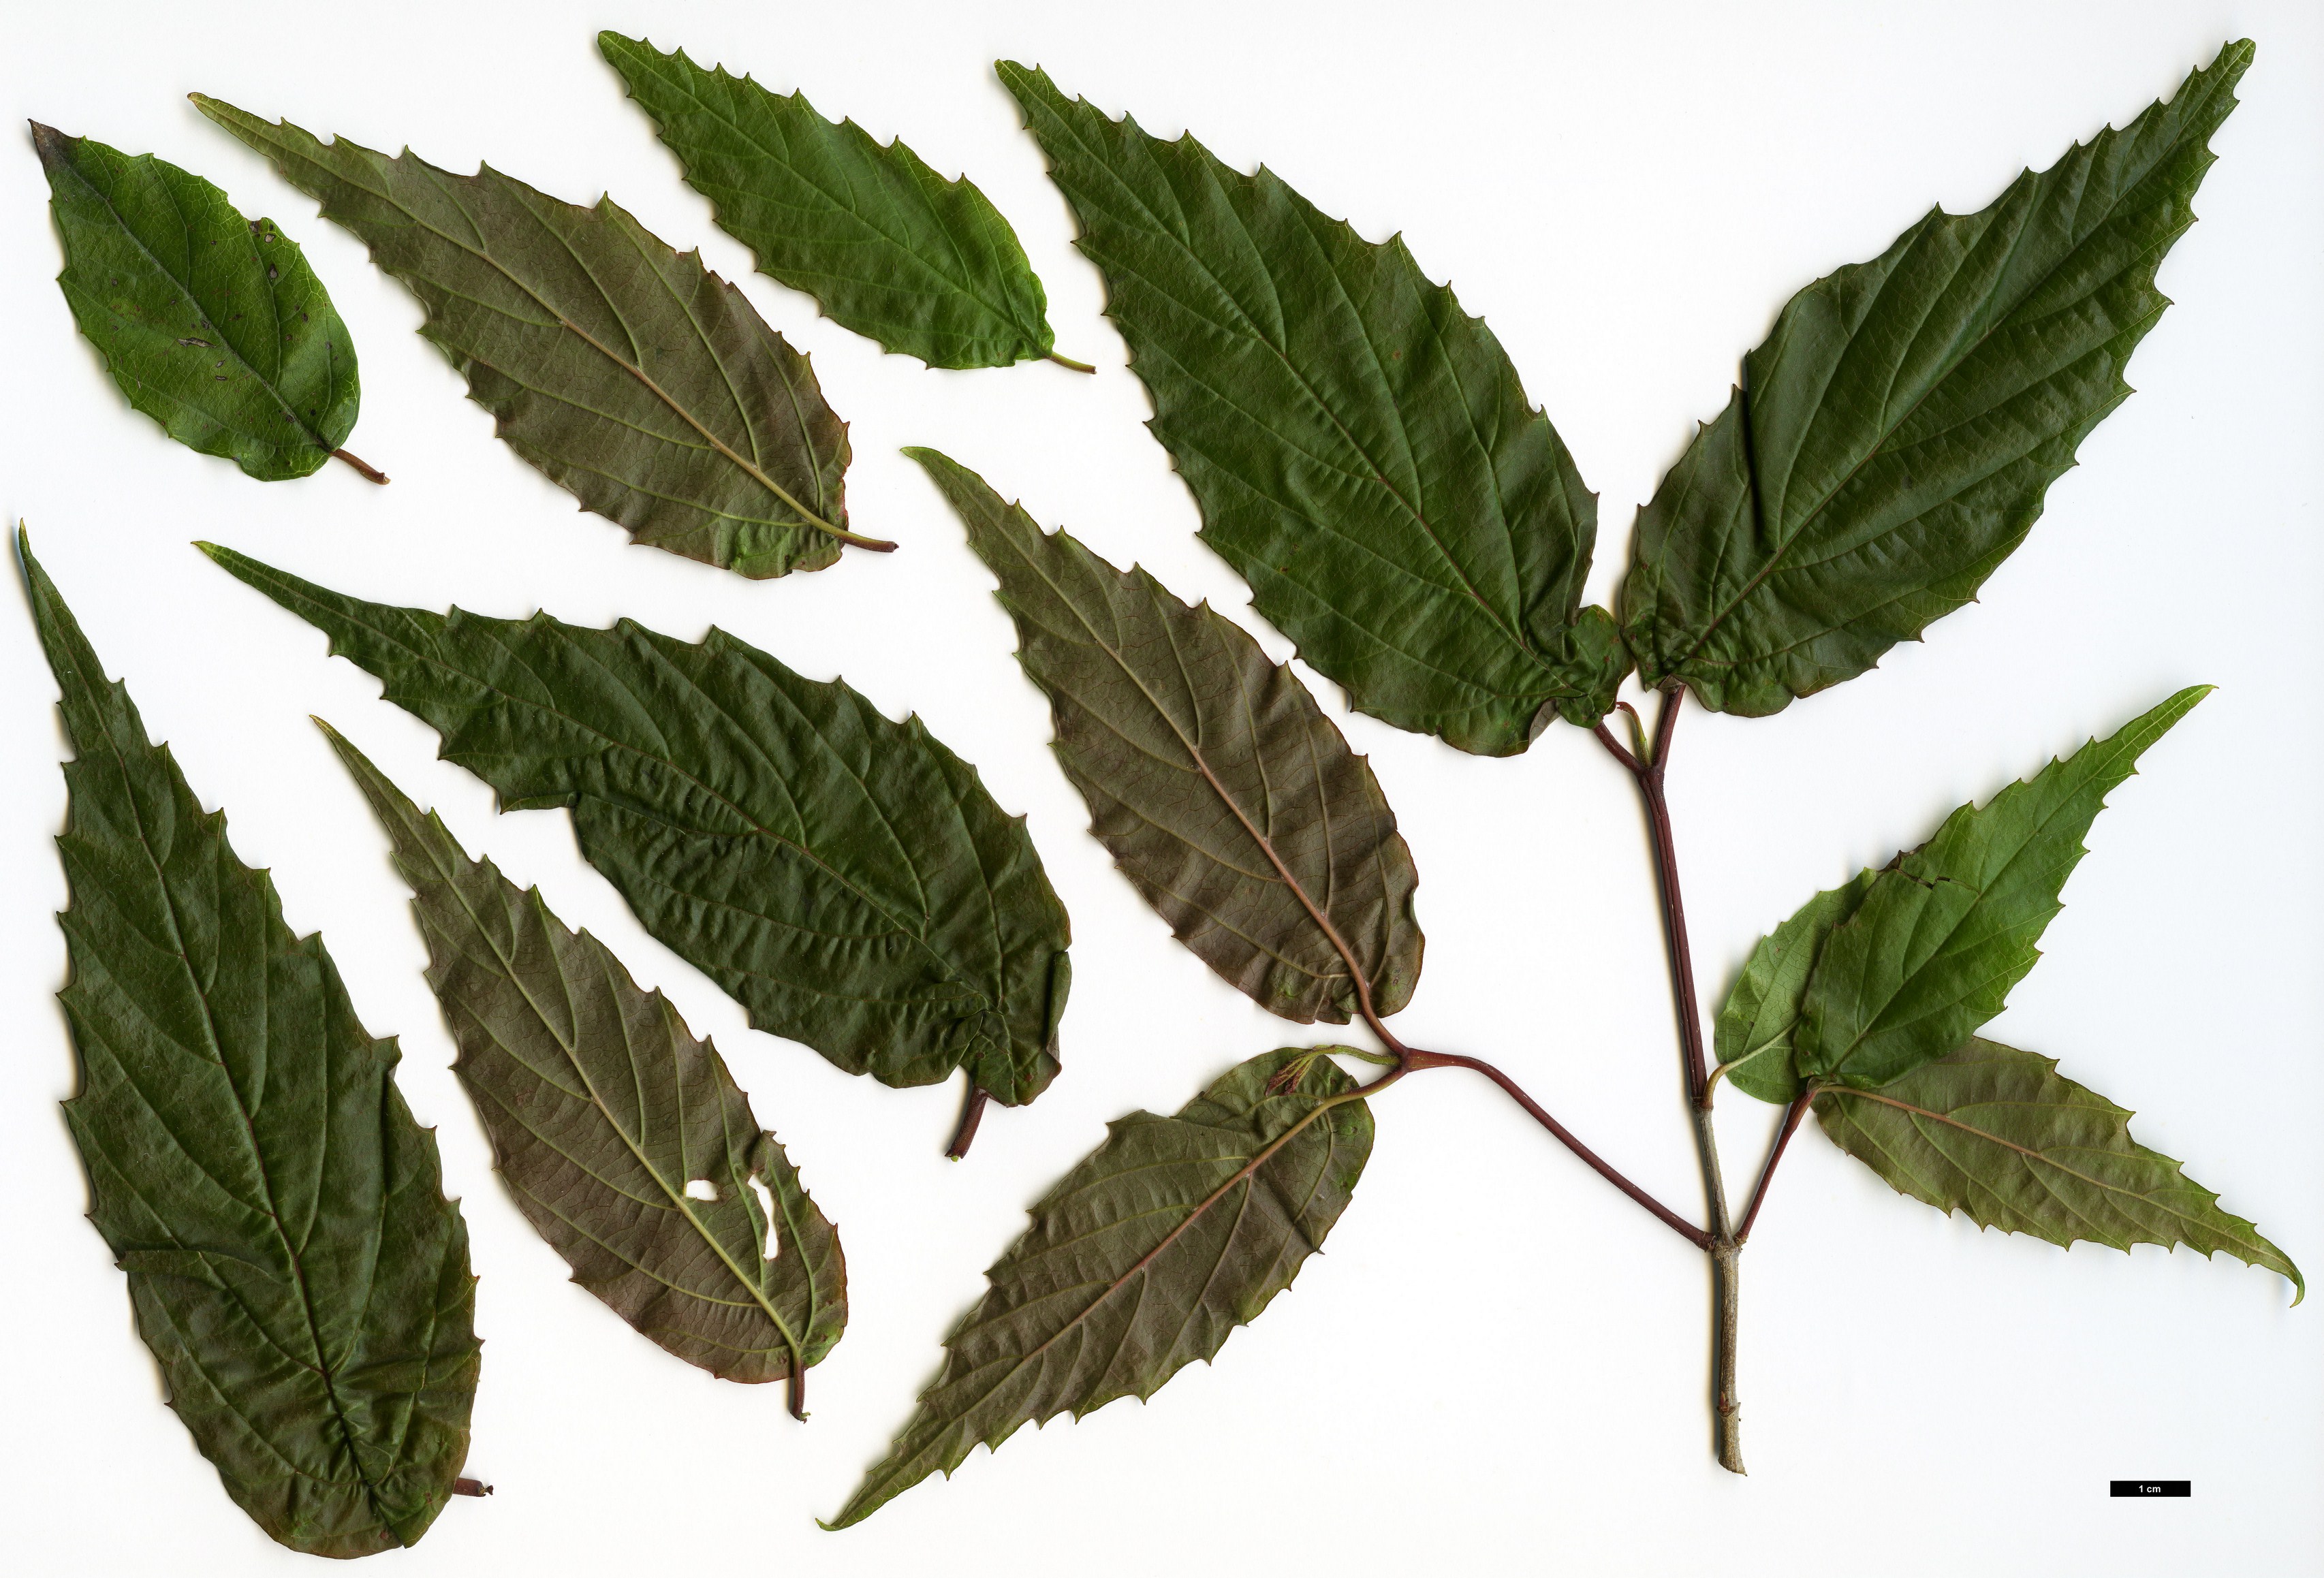 High resolution image: Family: Adoxaceae - Genus: Viburnum - Taxon: formosanum